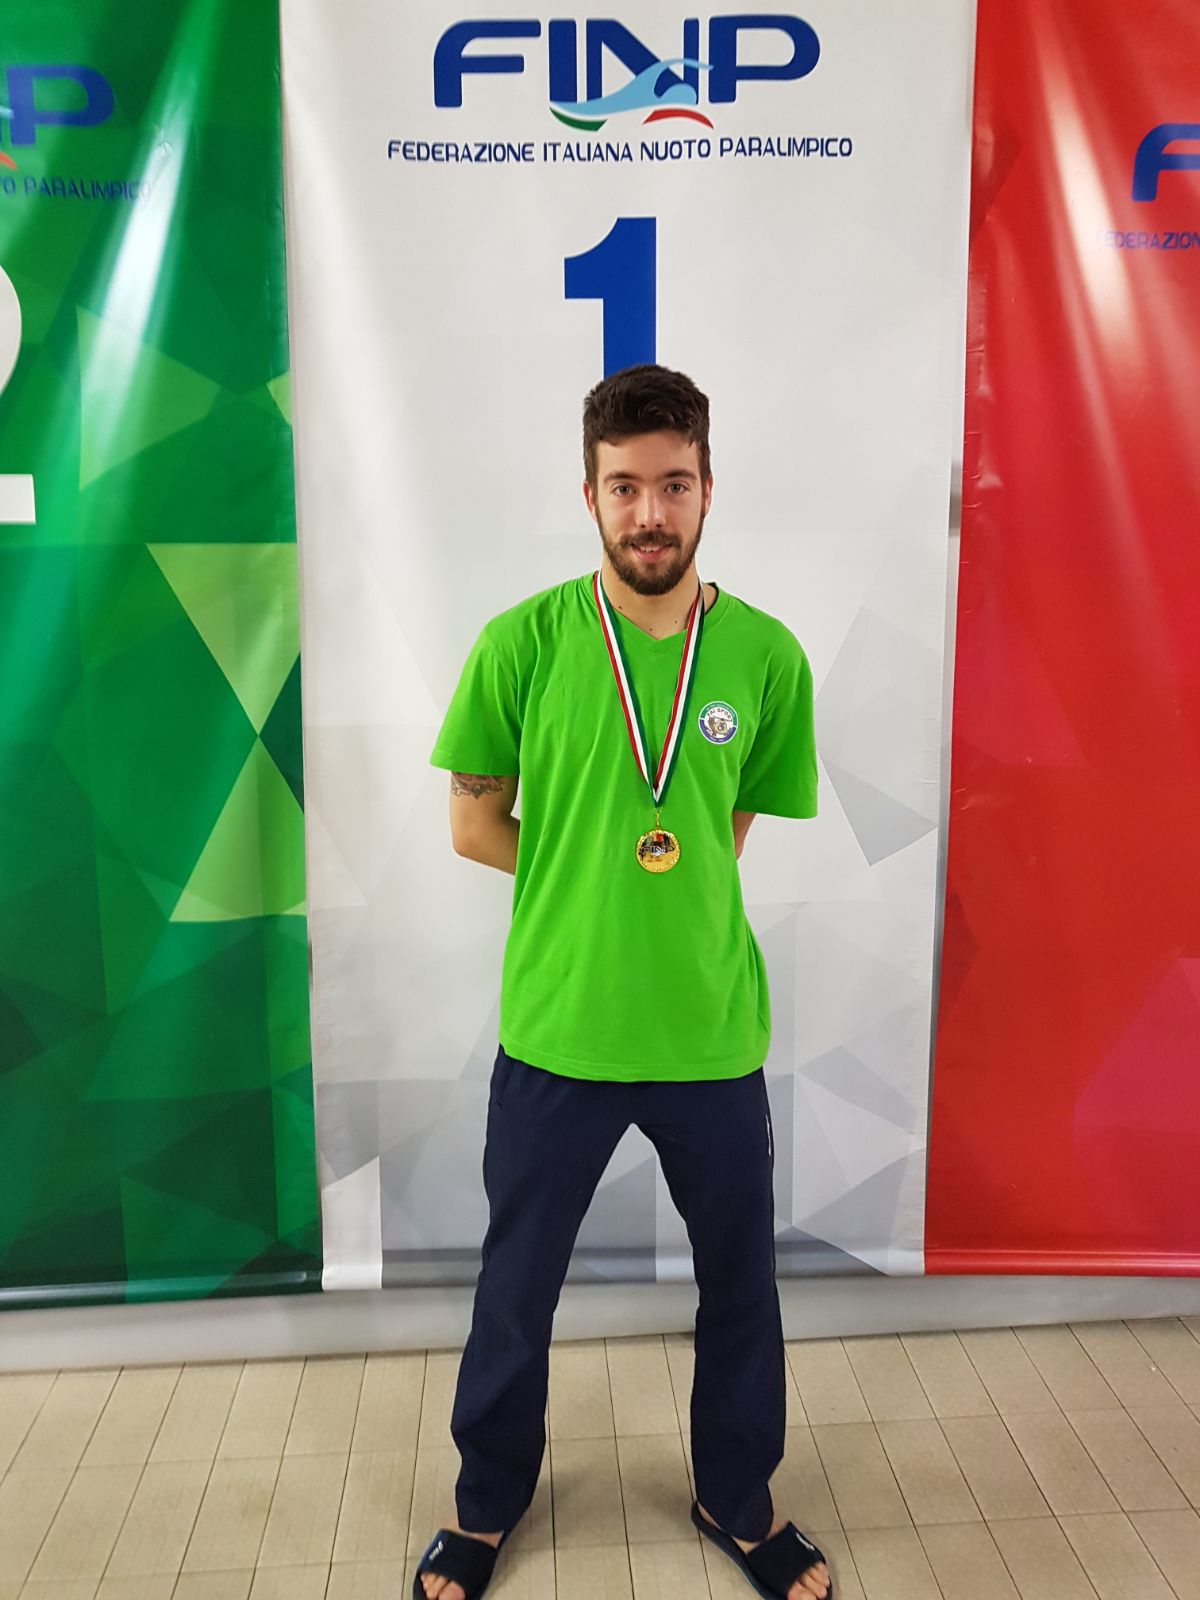 Nadalet campione italiano - Brescia 2018